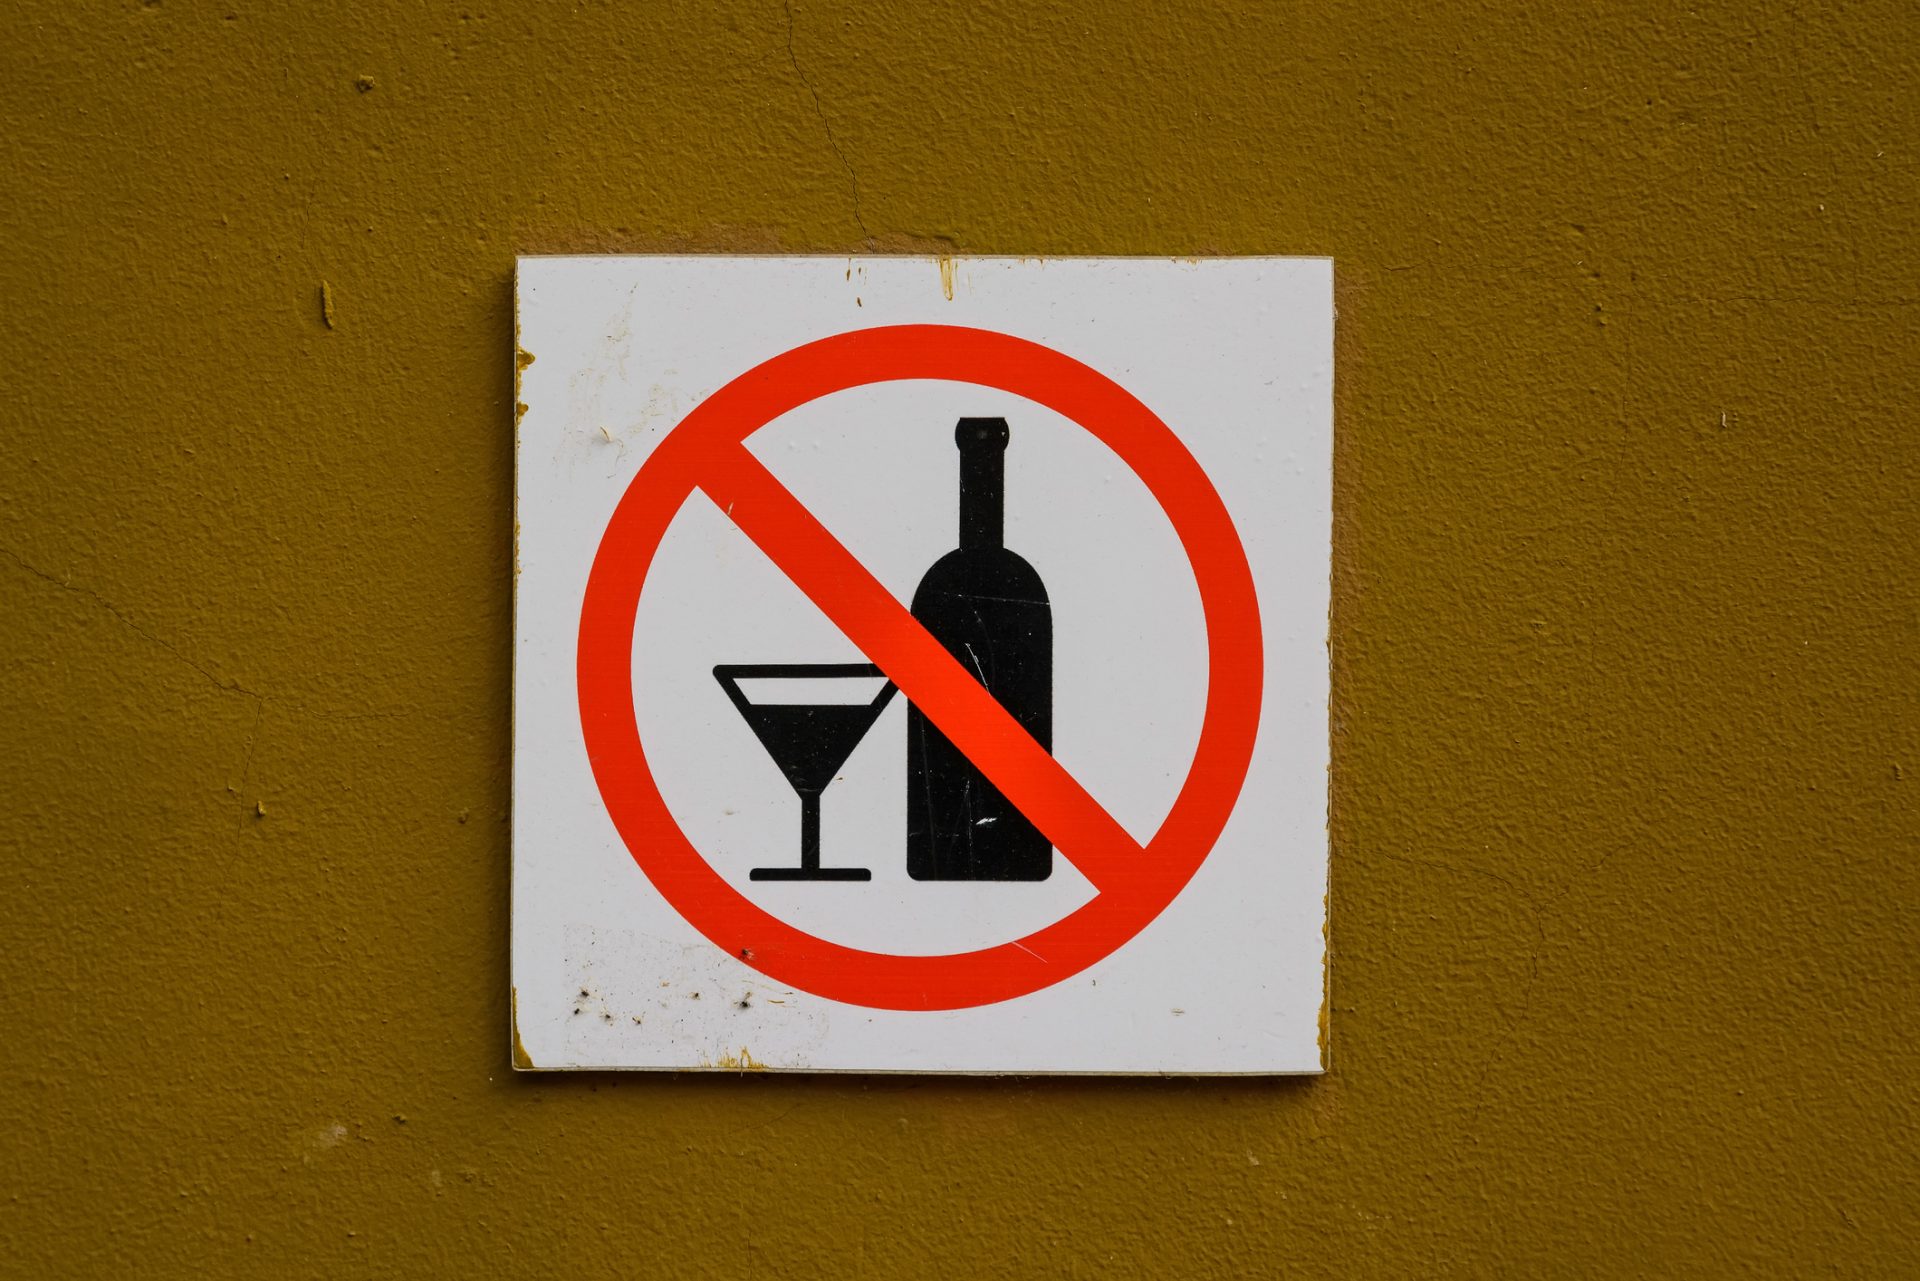 Álcool ilegal mata pelo menos 52 pessoas na Índia